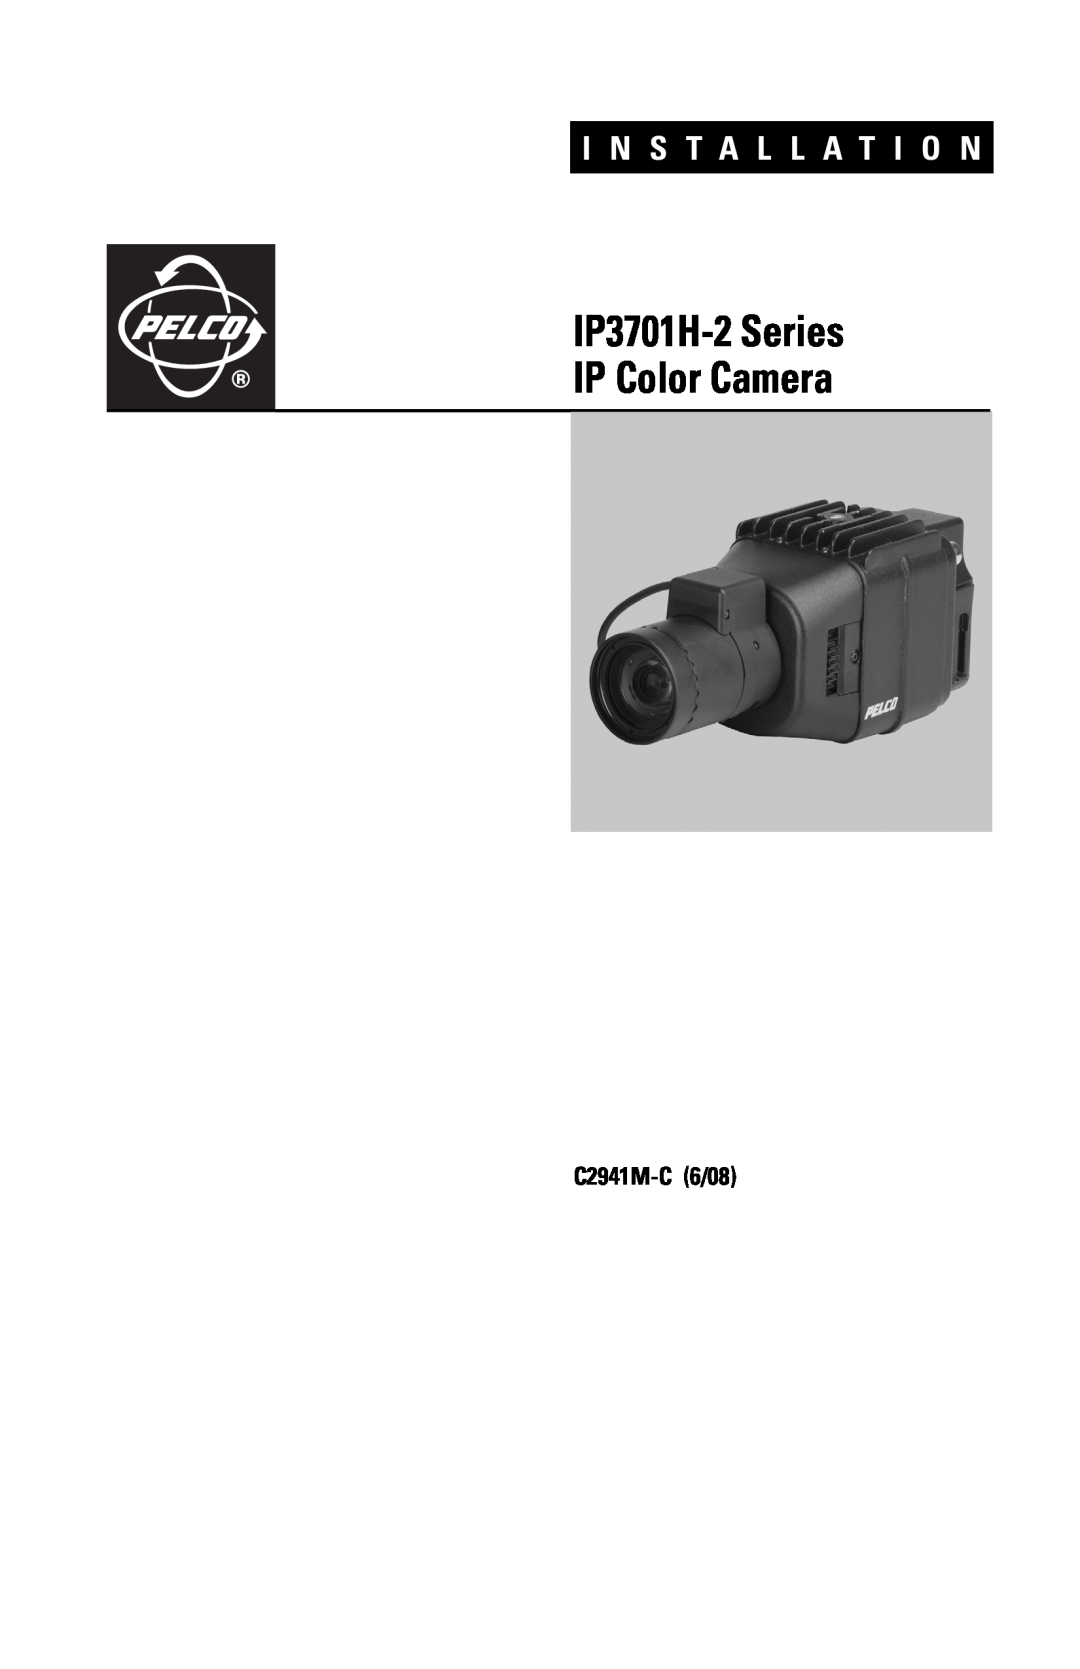 Pelco manual IP3701H-2Series IP Color Camera, C2941M-C6/08, I N S T A L L A T I O N 